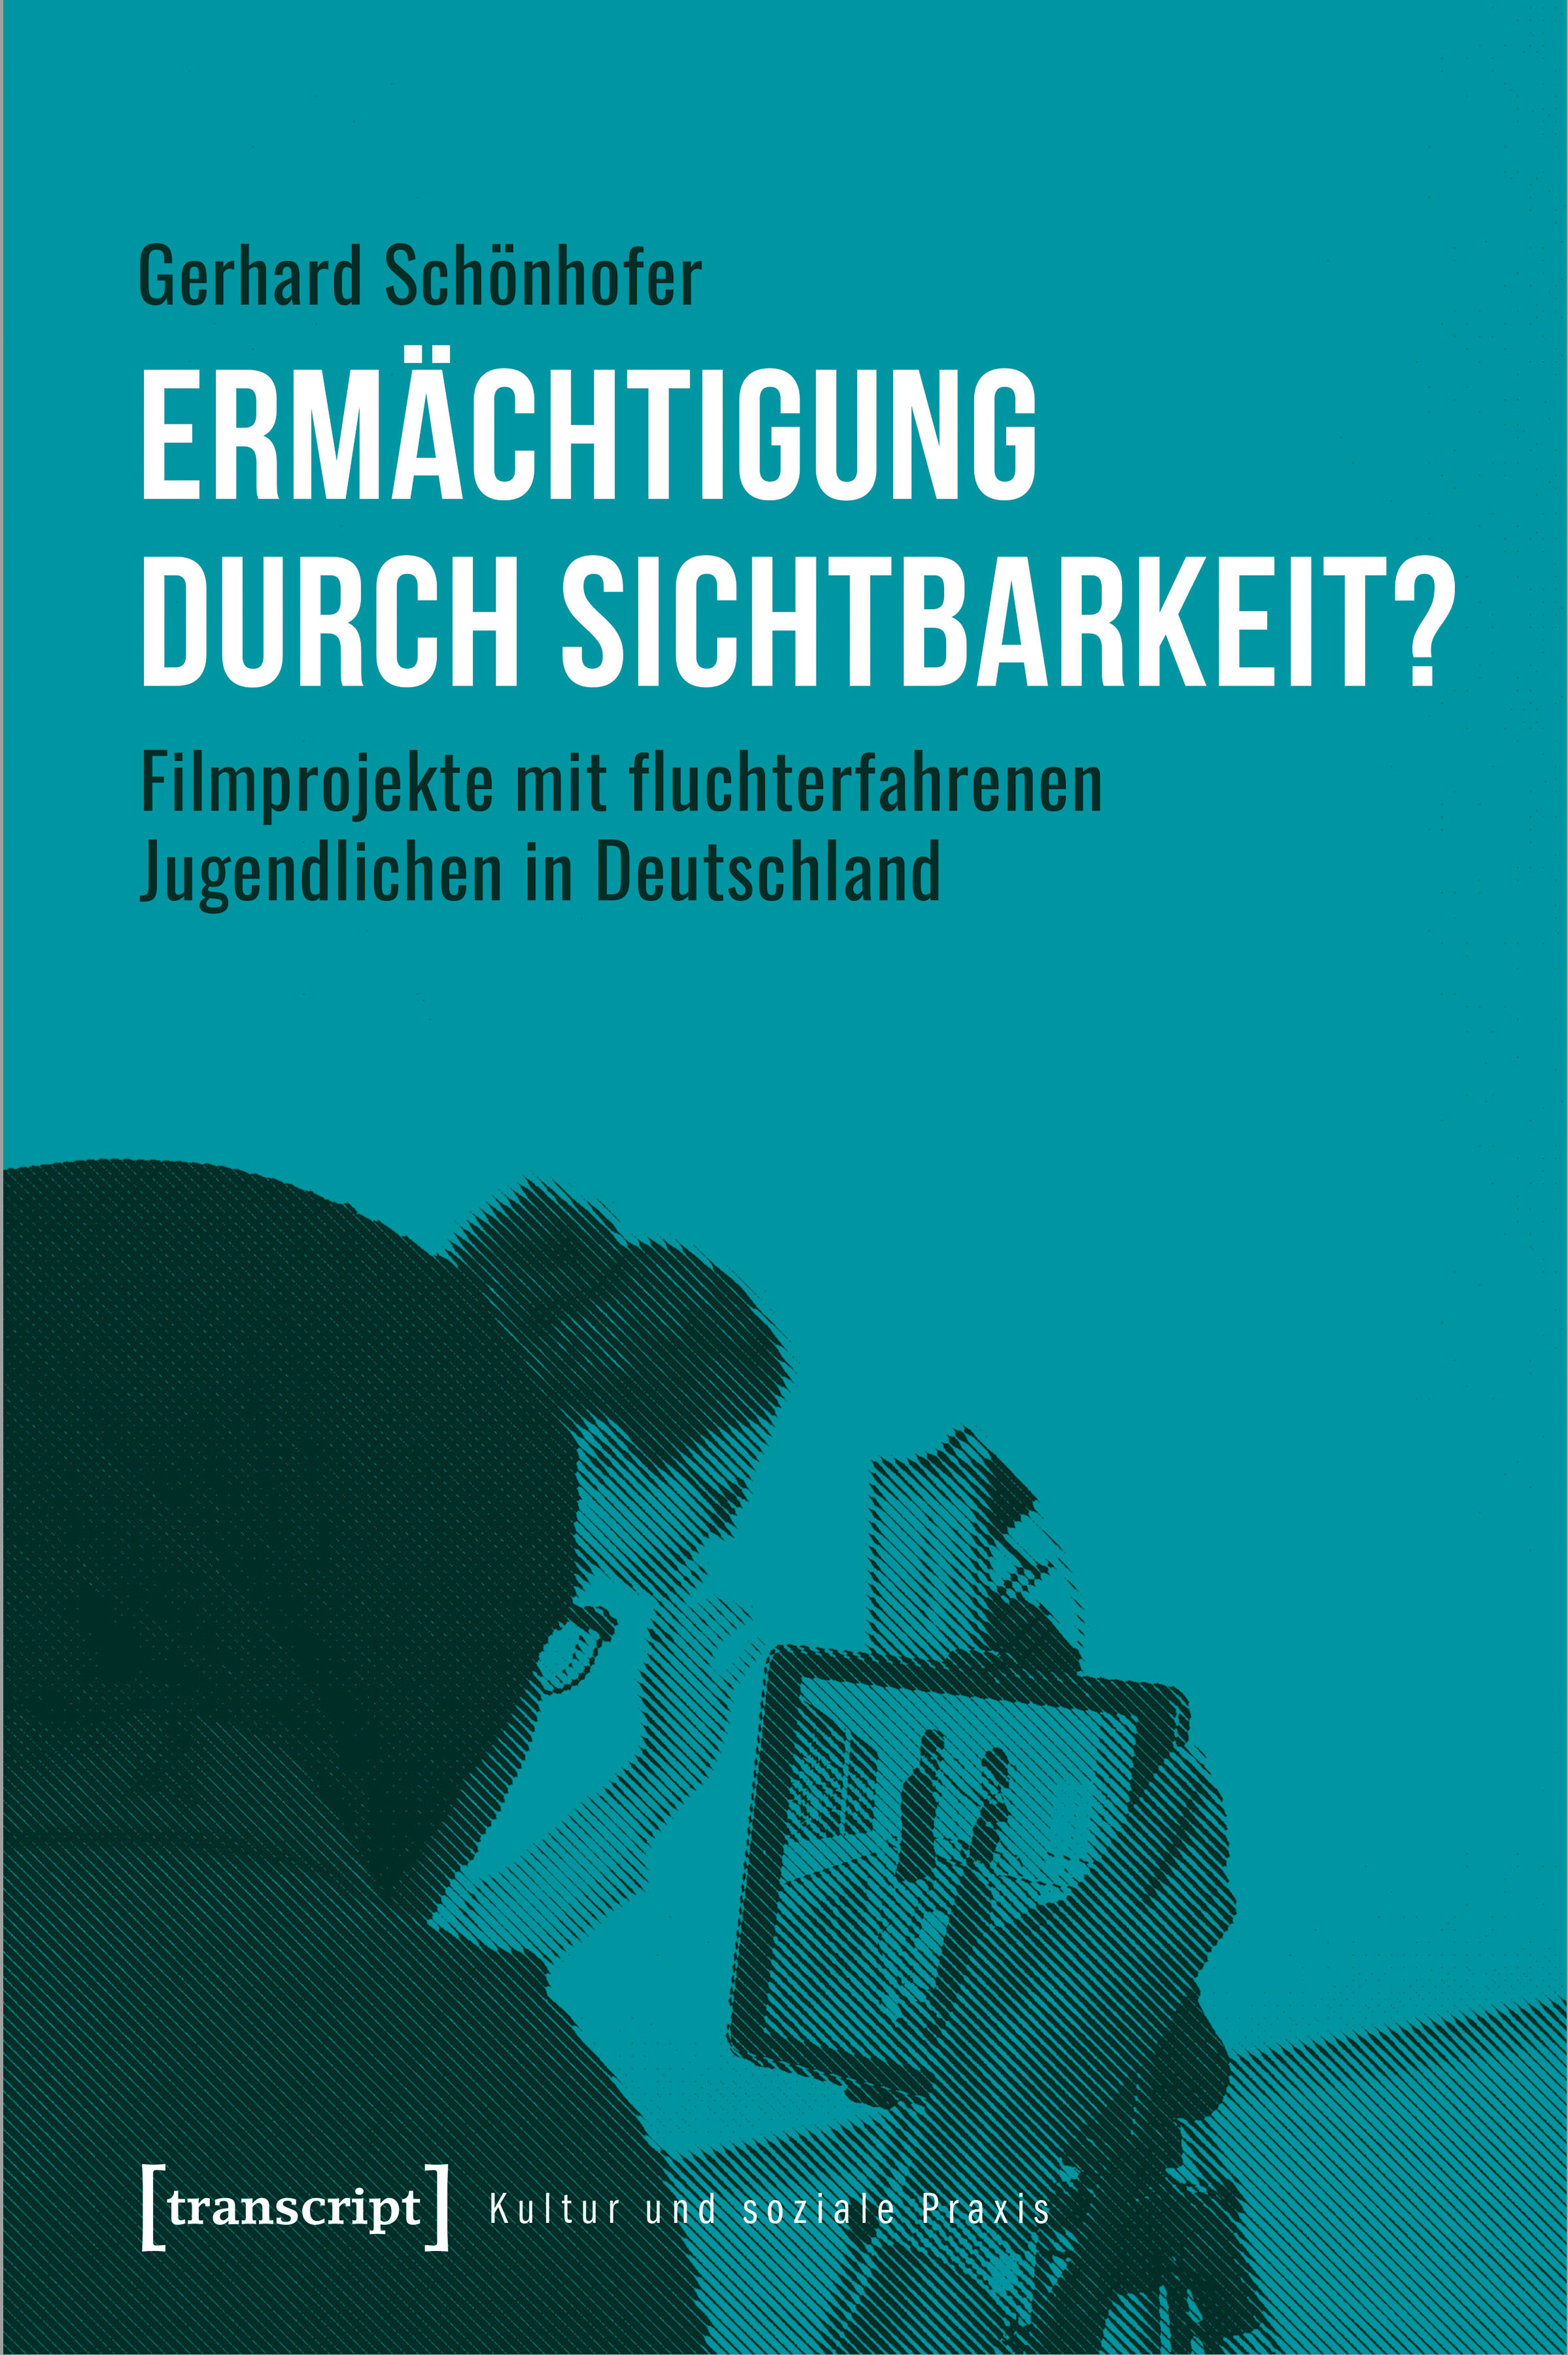 Schoenhofer Dissertation